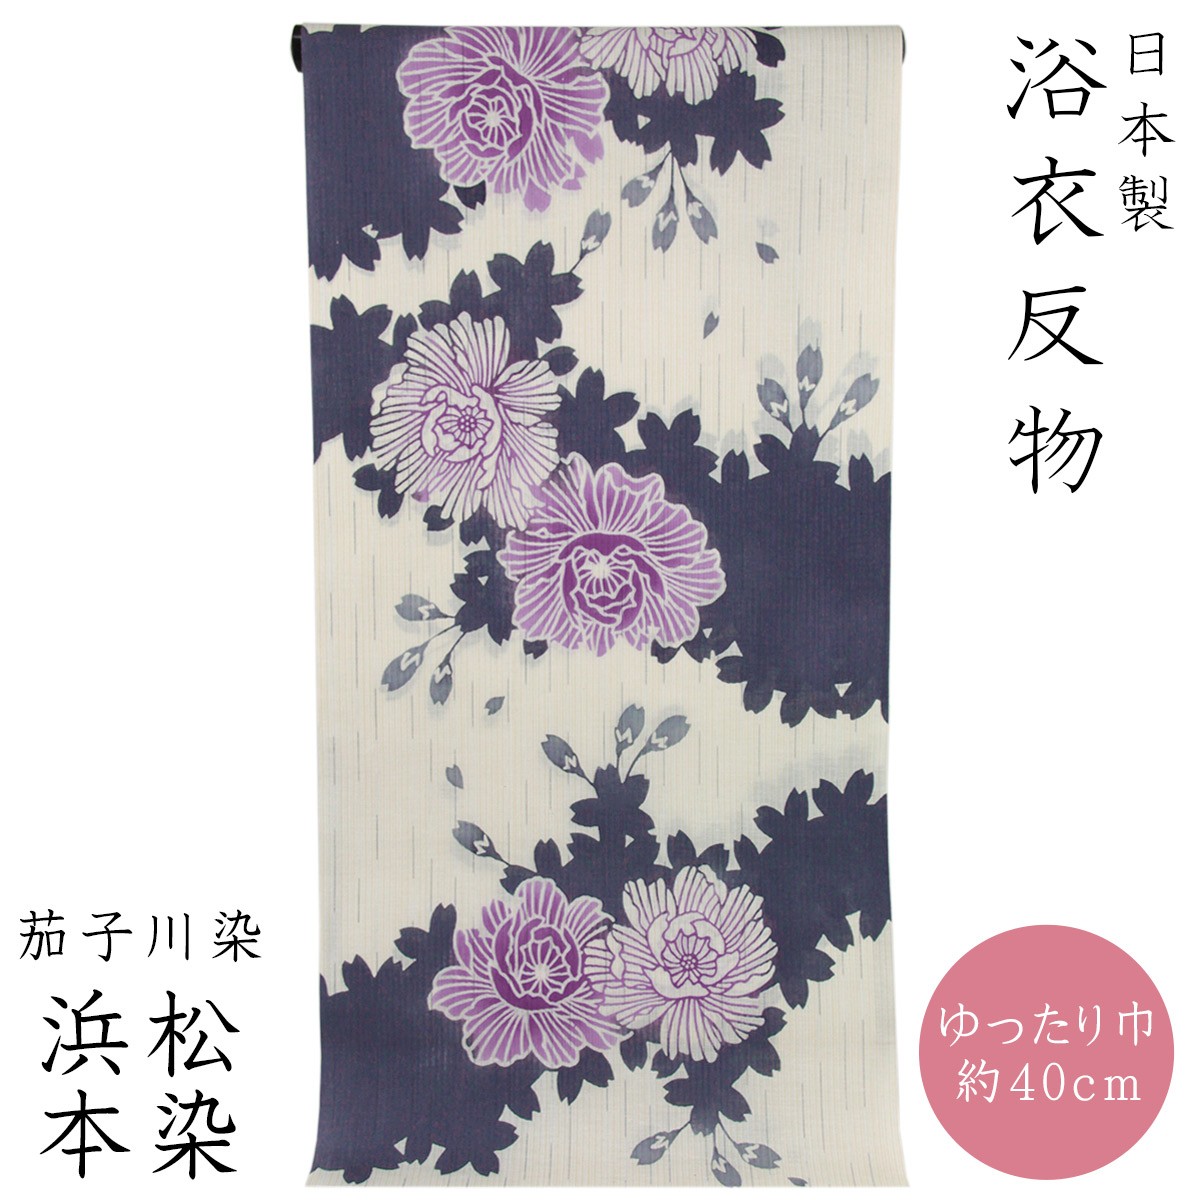 浴衣反物 レディース -224- 綿麻 注染 伊勢型紙 耳あり 日本製 生成り色 紫色 花柄